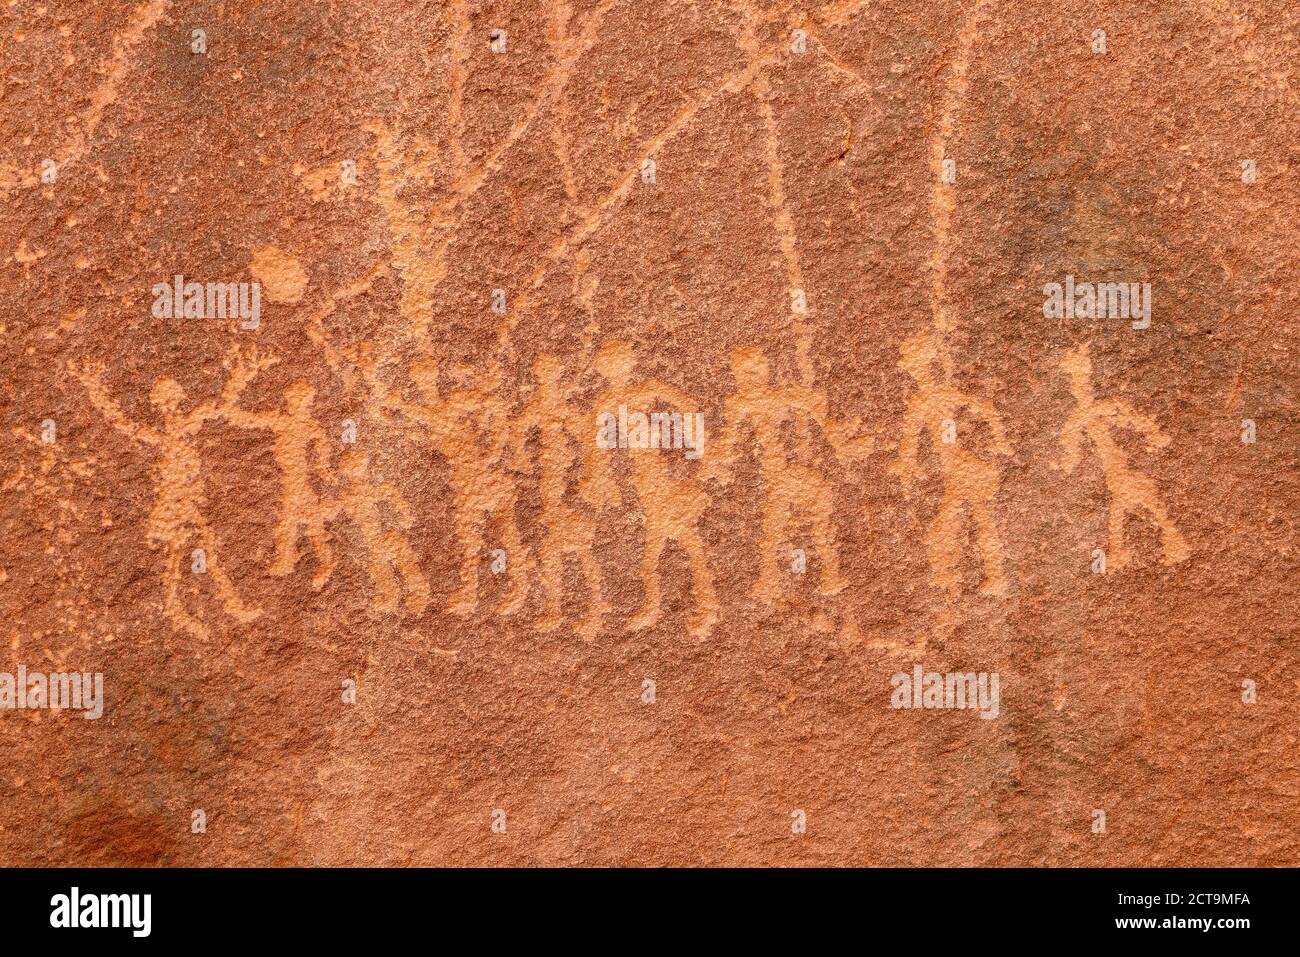 Afrique du Nord, Sahara, Algérie, Parc national de Tassili n'Ajjer, Tadrar, art rupestre néolithique, gravure d'un groupe de personnes jouant avec un ballon Banque D'Images